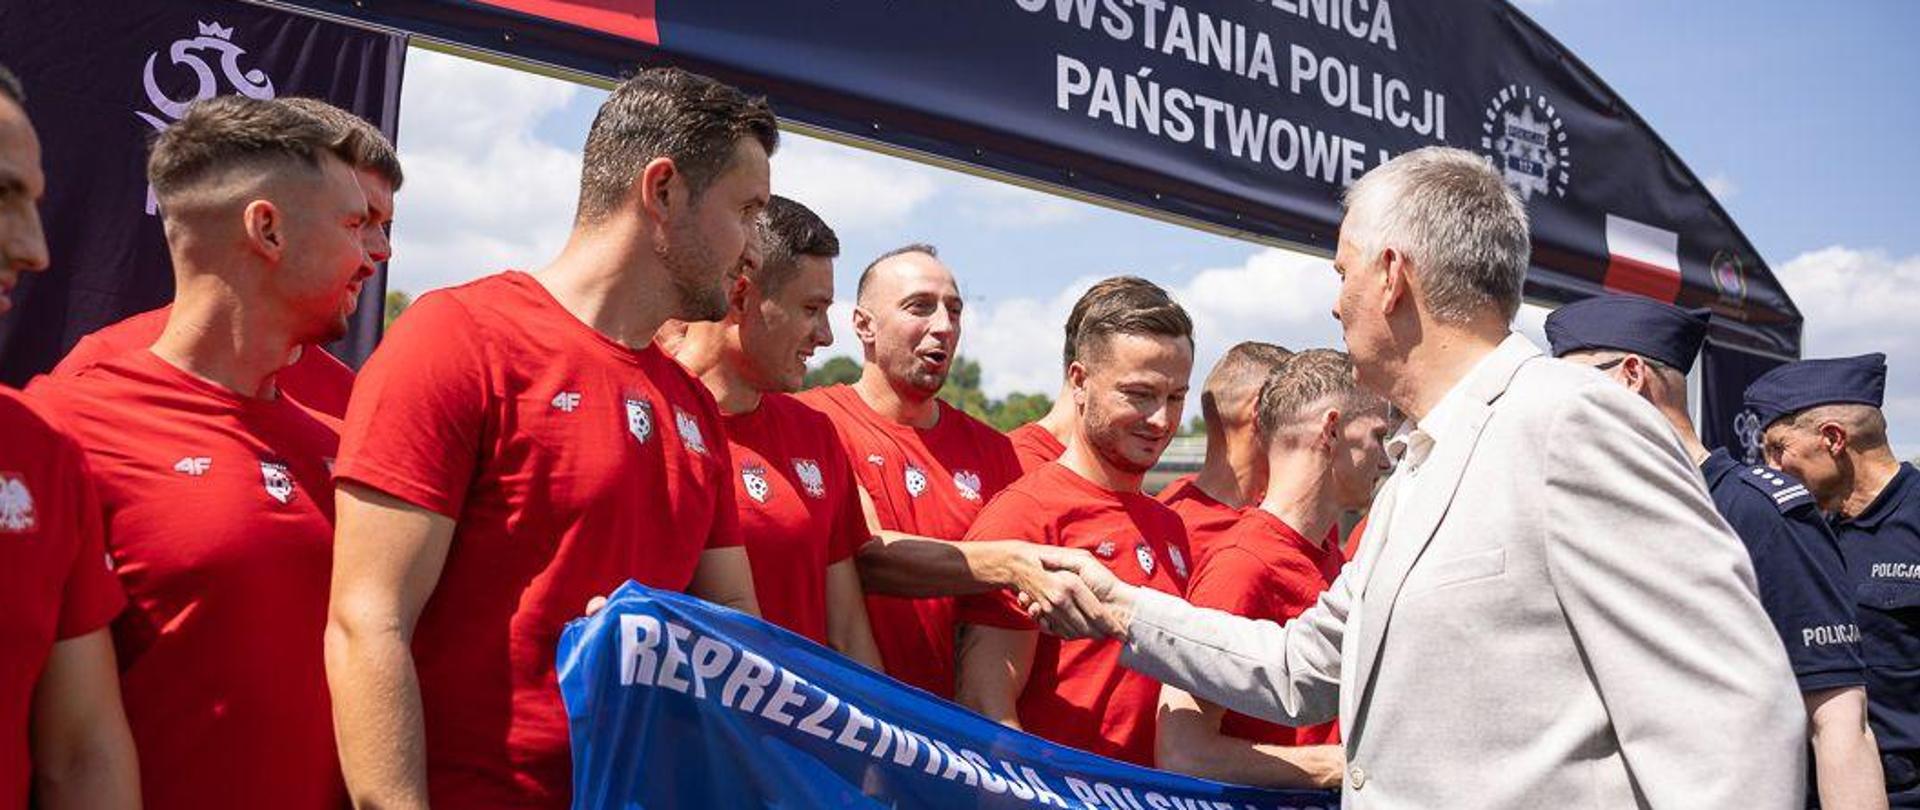 Minister Tomasz Siemoniak wita się z piłkarzami reprezentacji Polskiej Policji poprzez podanie im dłoni. Piłkarze mają czerwone stroje piłkarskie, trzymają niebieską flagę reprezentacji Polskiej Policji.